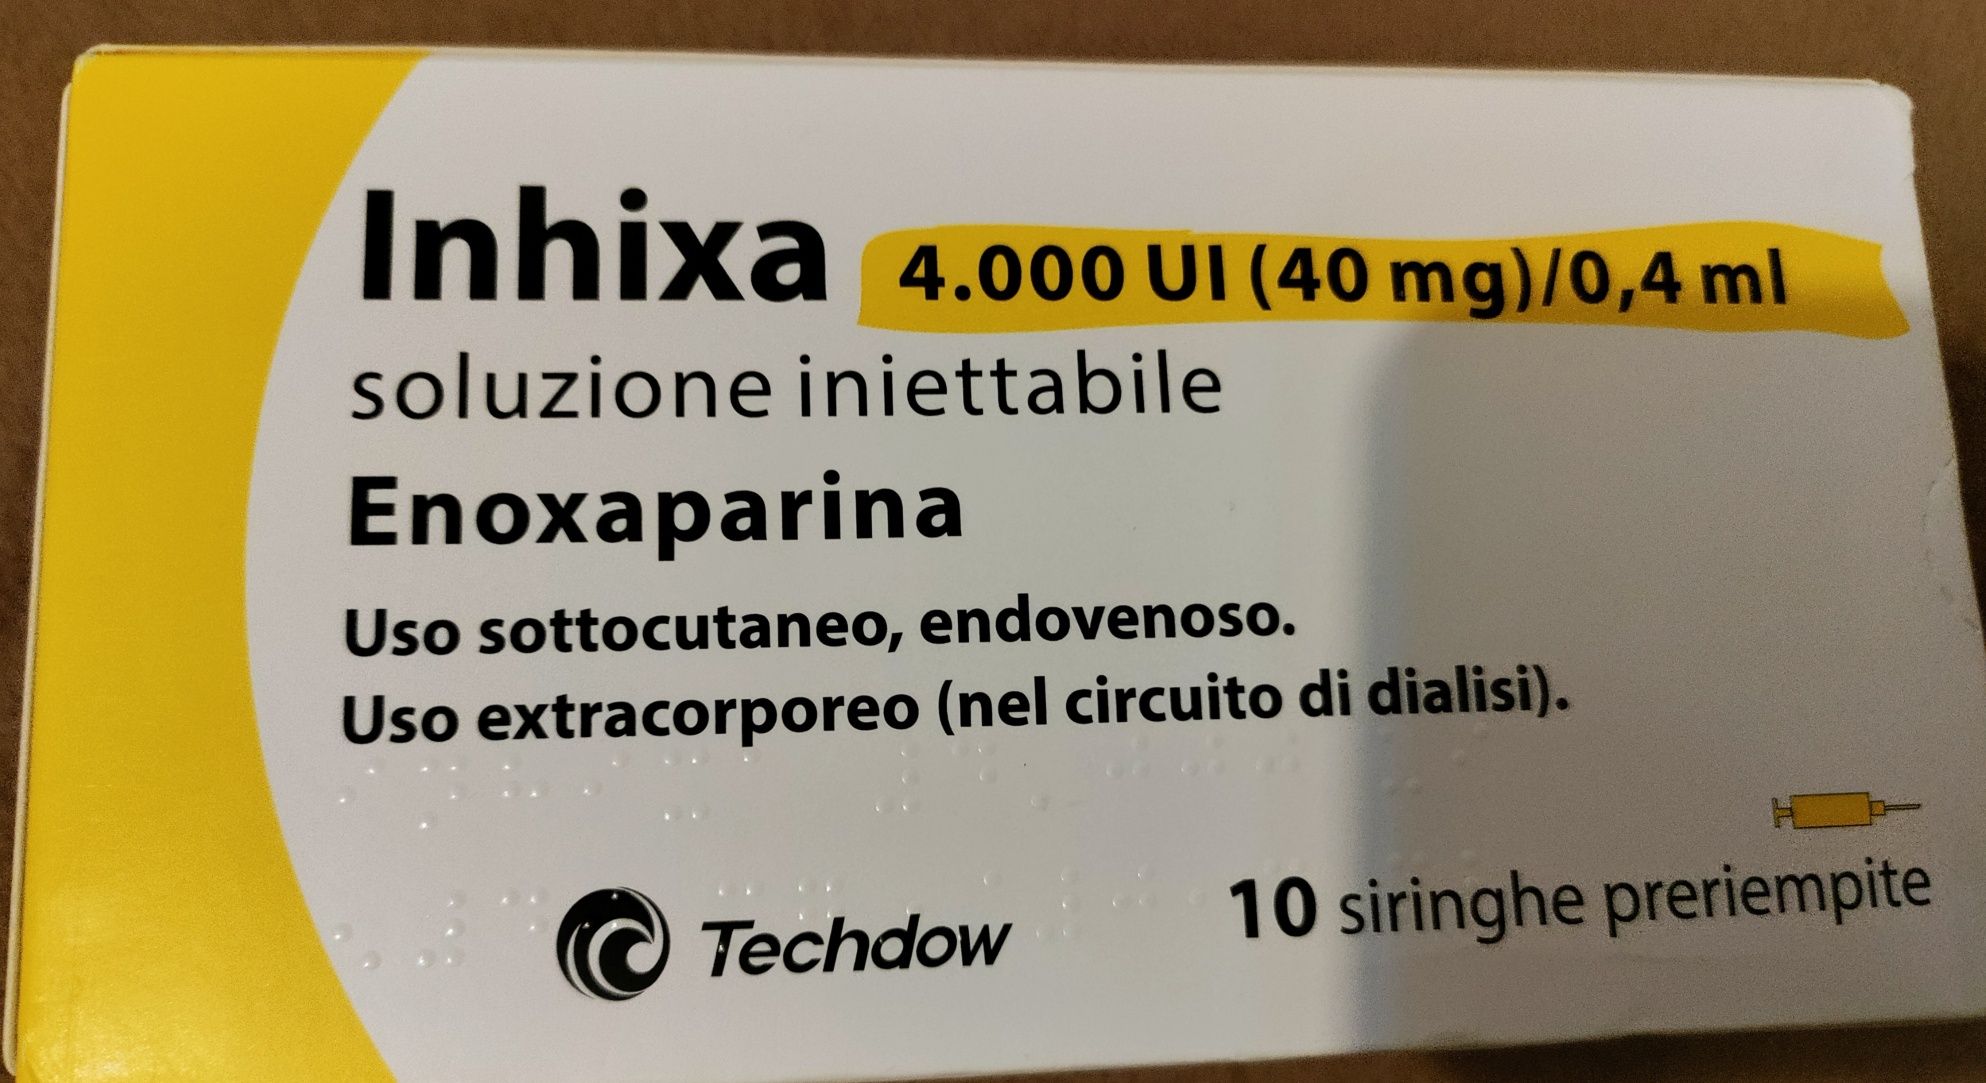 Inhixa,аналог Клексану, Інхіксу розчин для ін'єкцій 40 мг / 0,4 мл 10